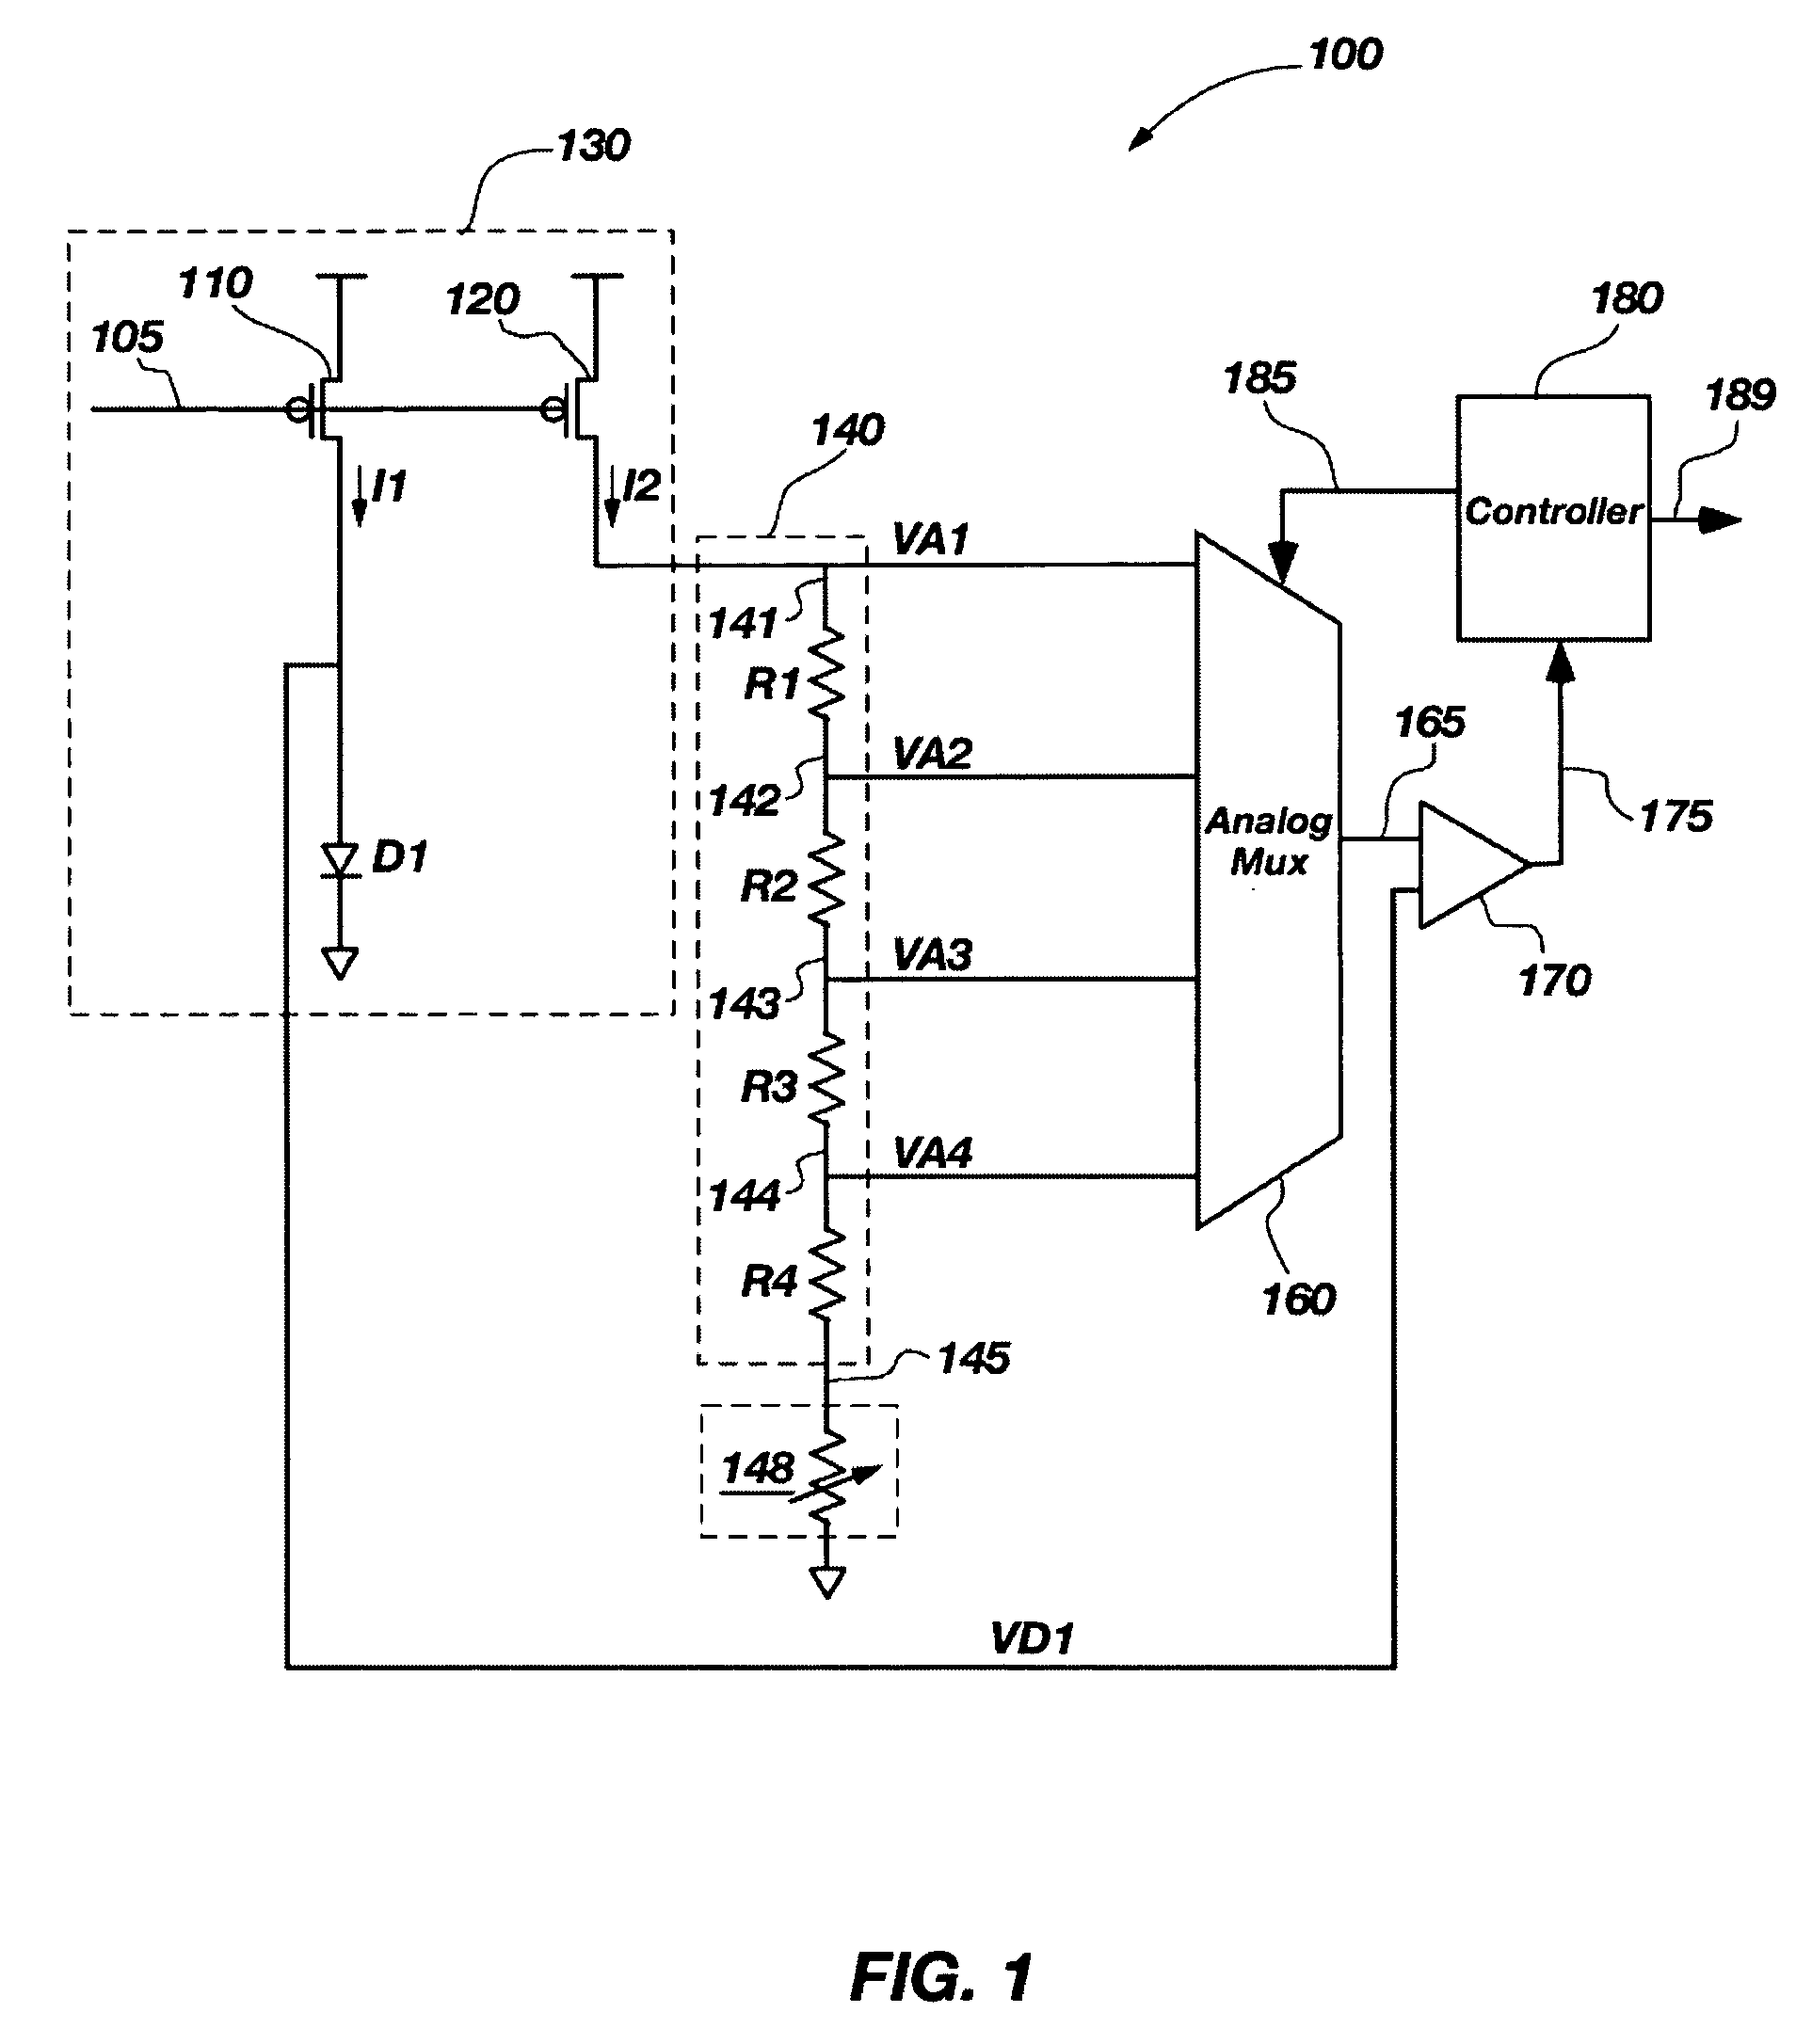 Method and apparatus for low voltage temperature sensing